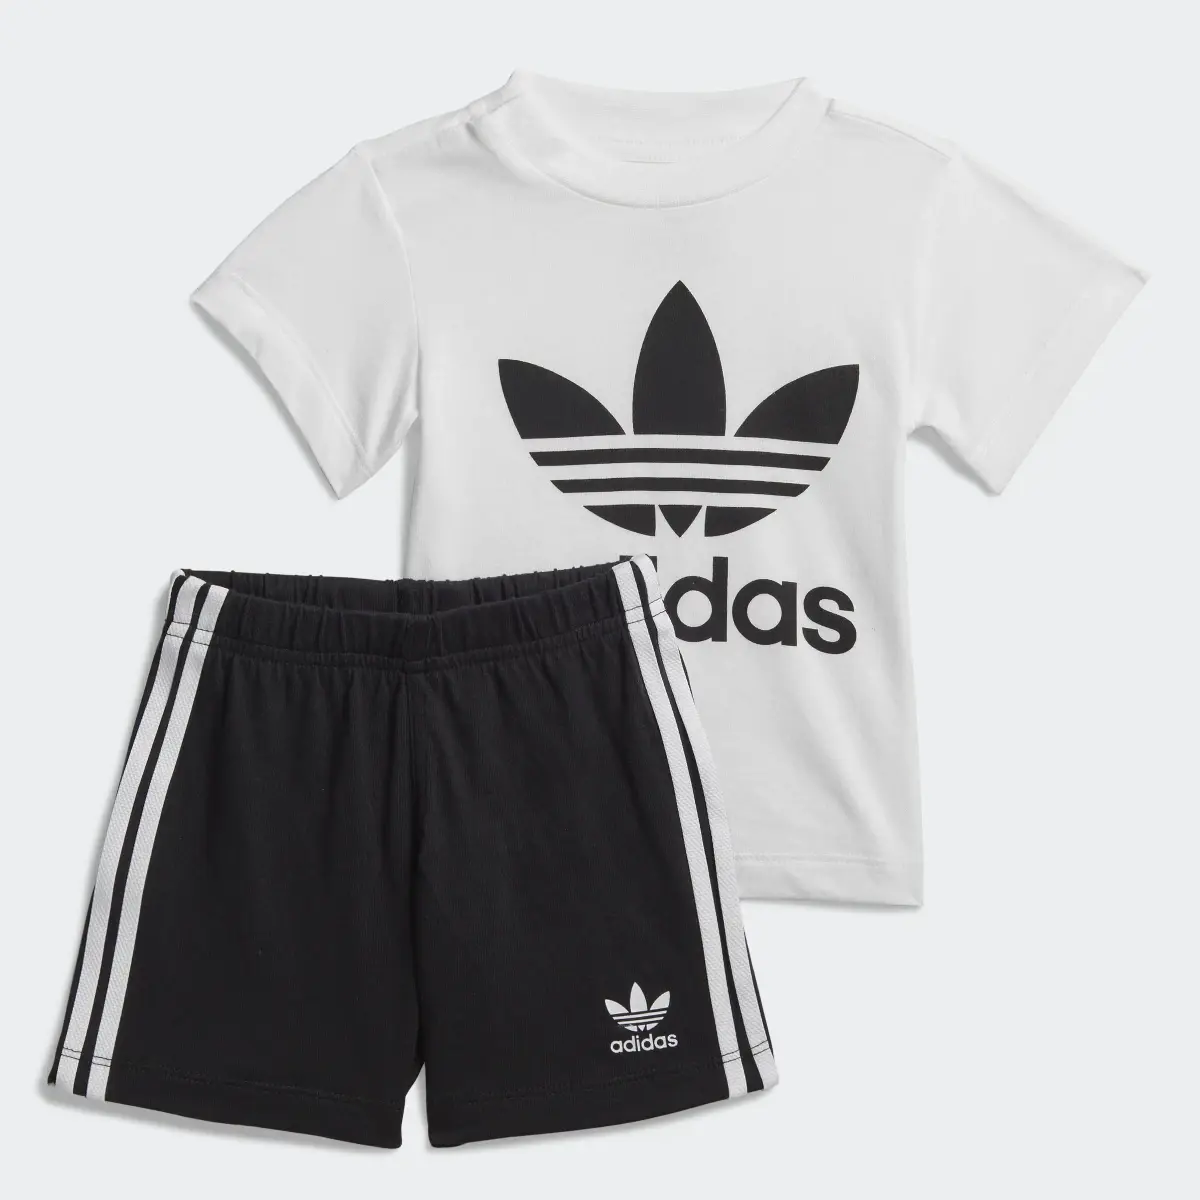 Adidas Trefoil Şort ve Tişört Takımı. 1